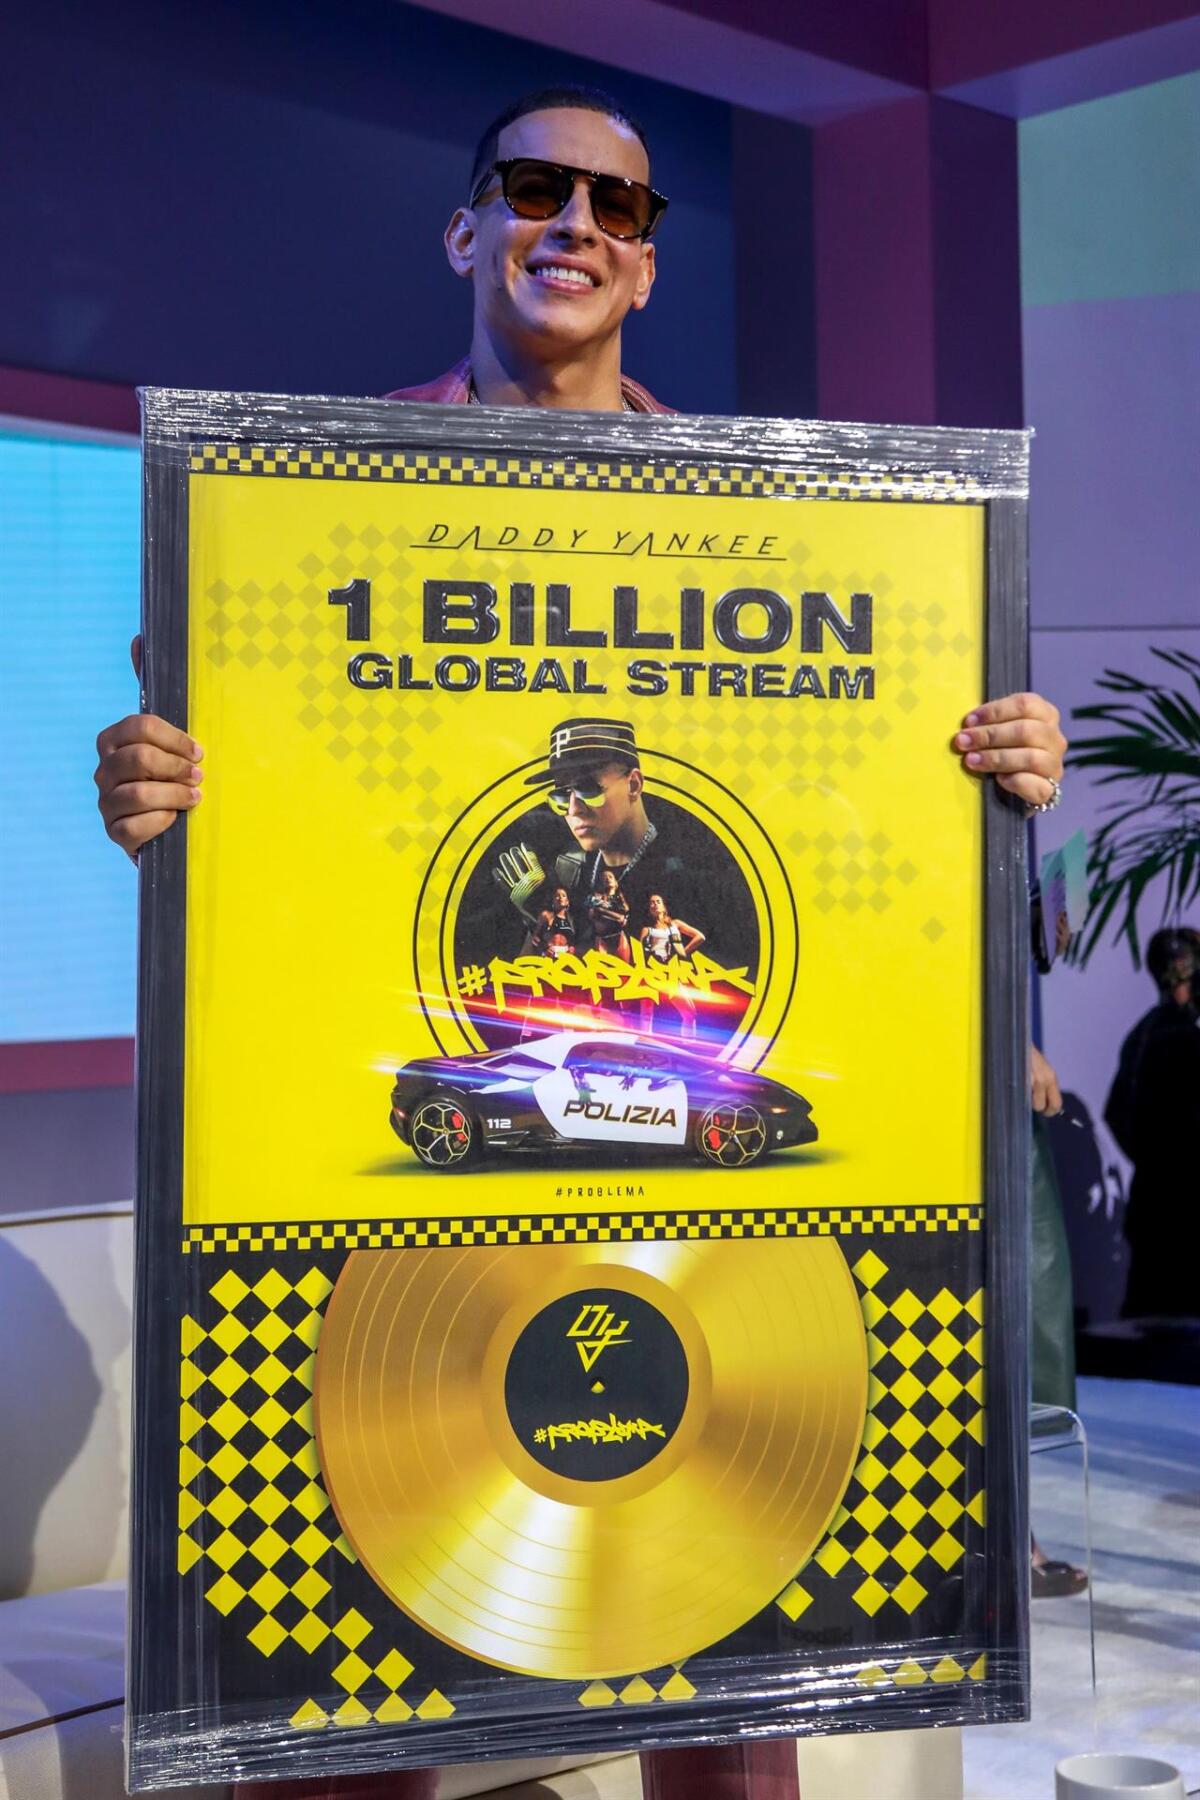 Con su tema "Problema", Daddy Yankee supera los mil millones de reproducciones en las plataformas de música digital.